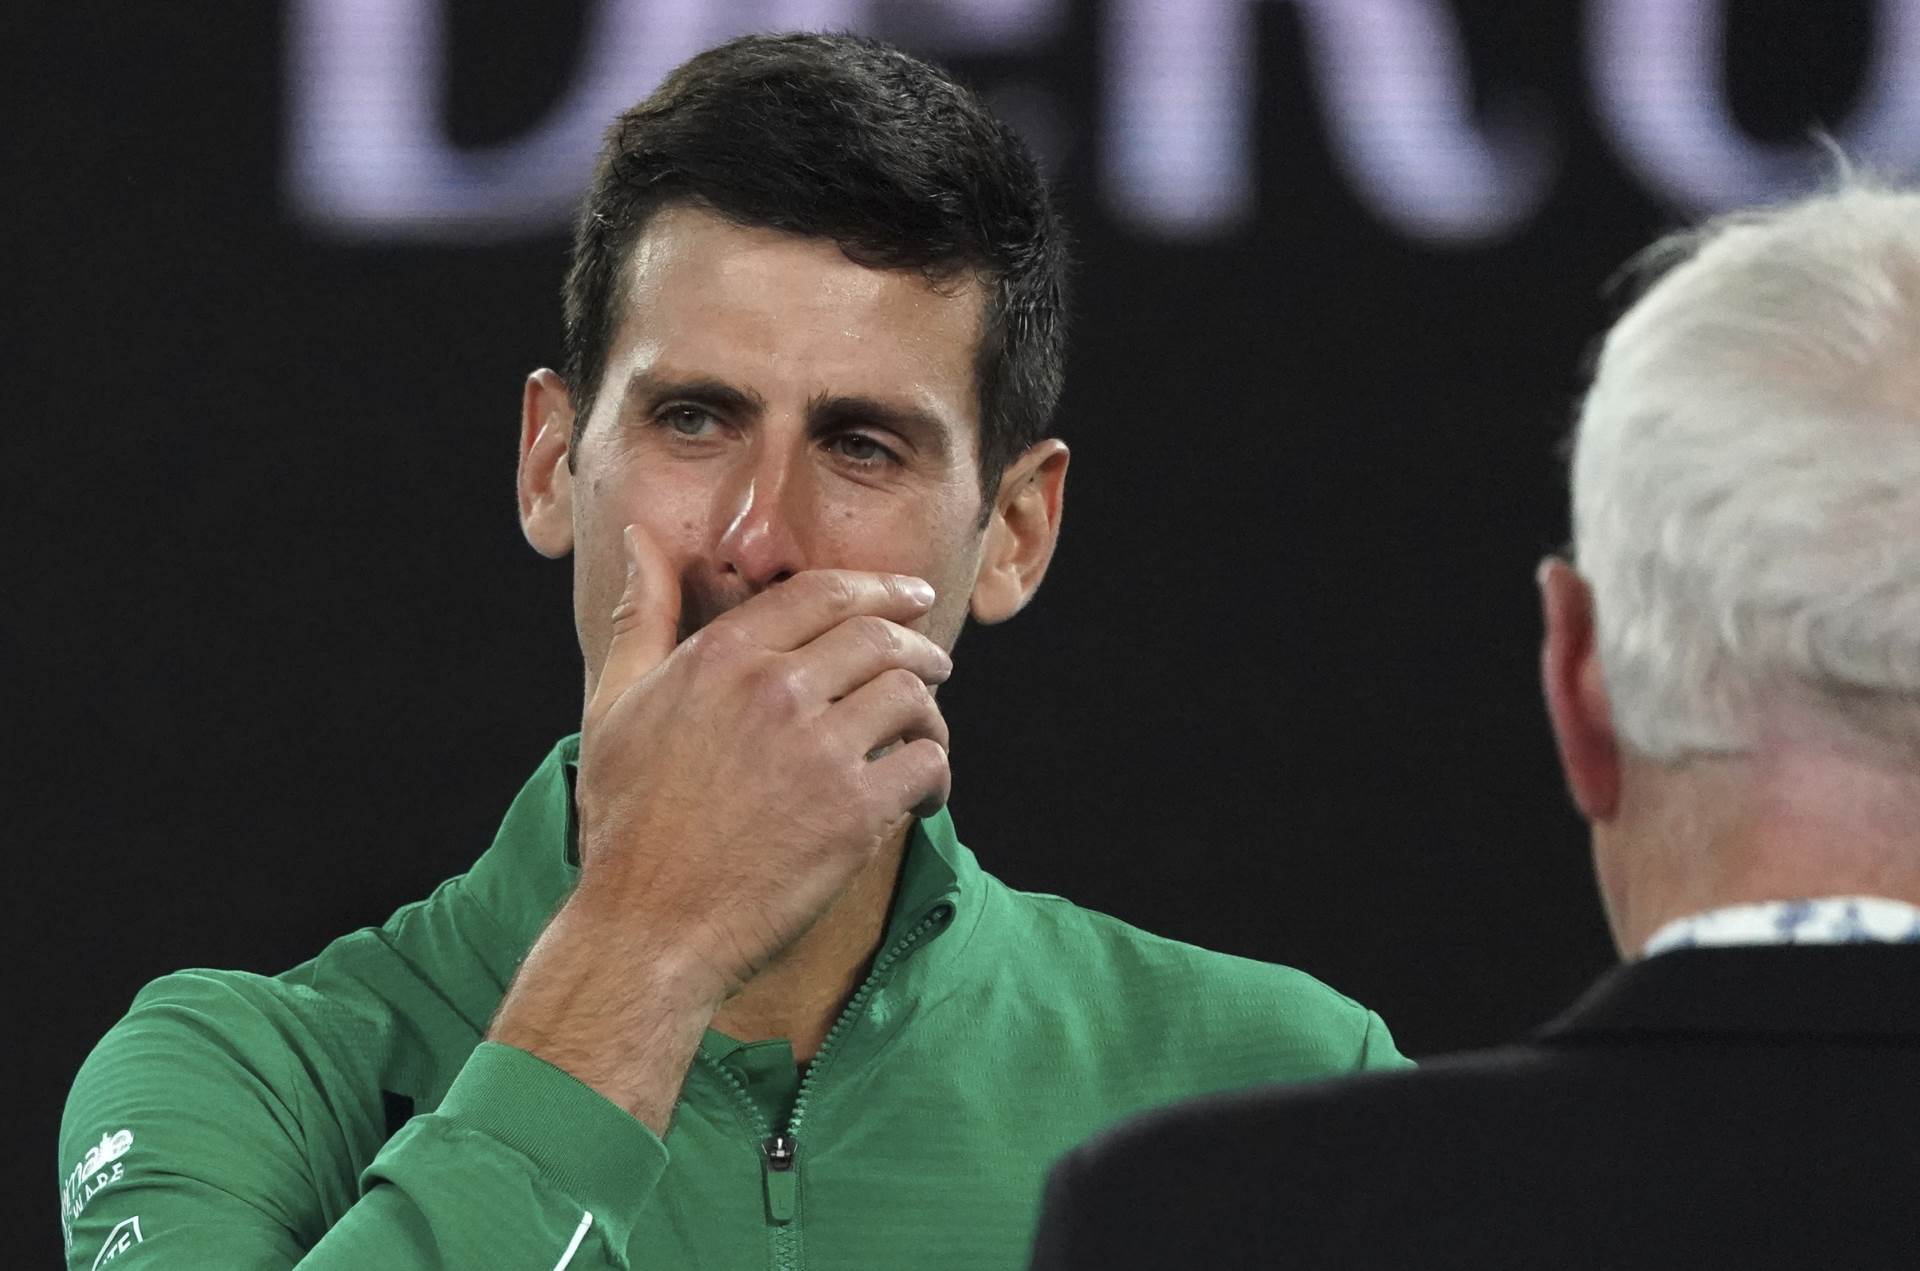  Novak-Djokovic-izjava-Australijan-open-zaplakao-pitanje-Kobi-Brajant-pobjeda-Milos-Raonic 